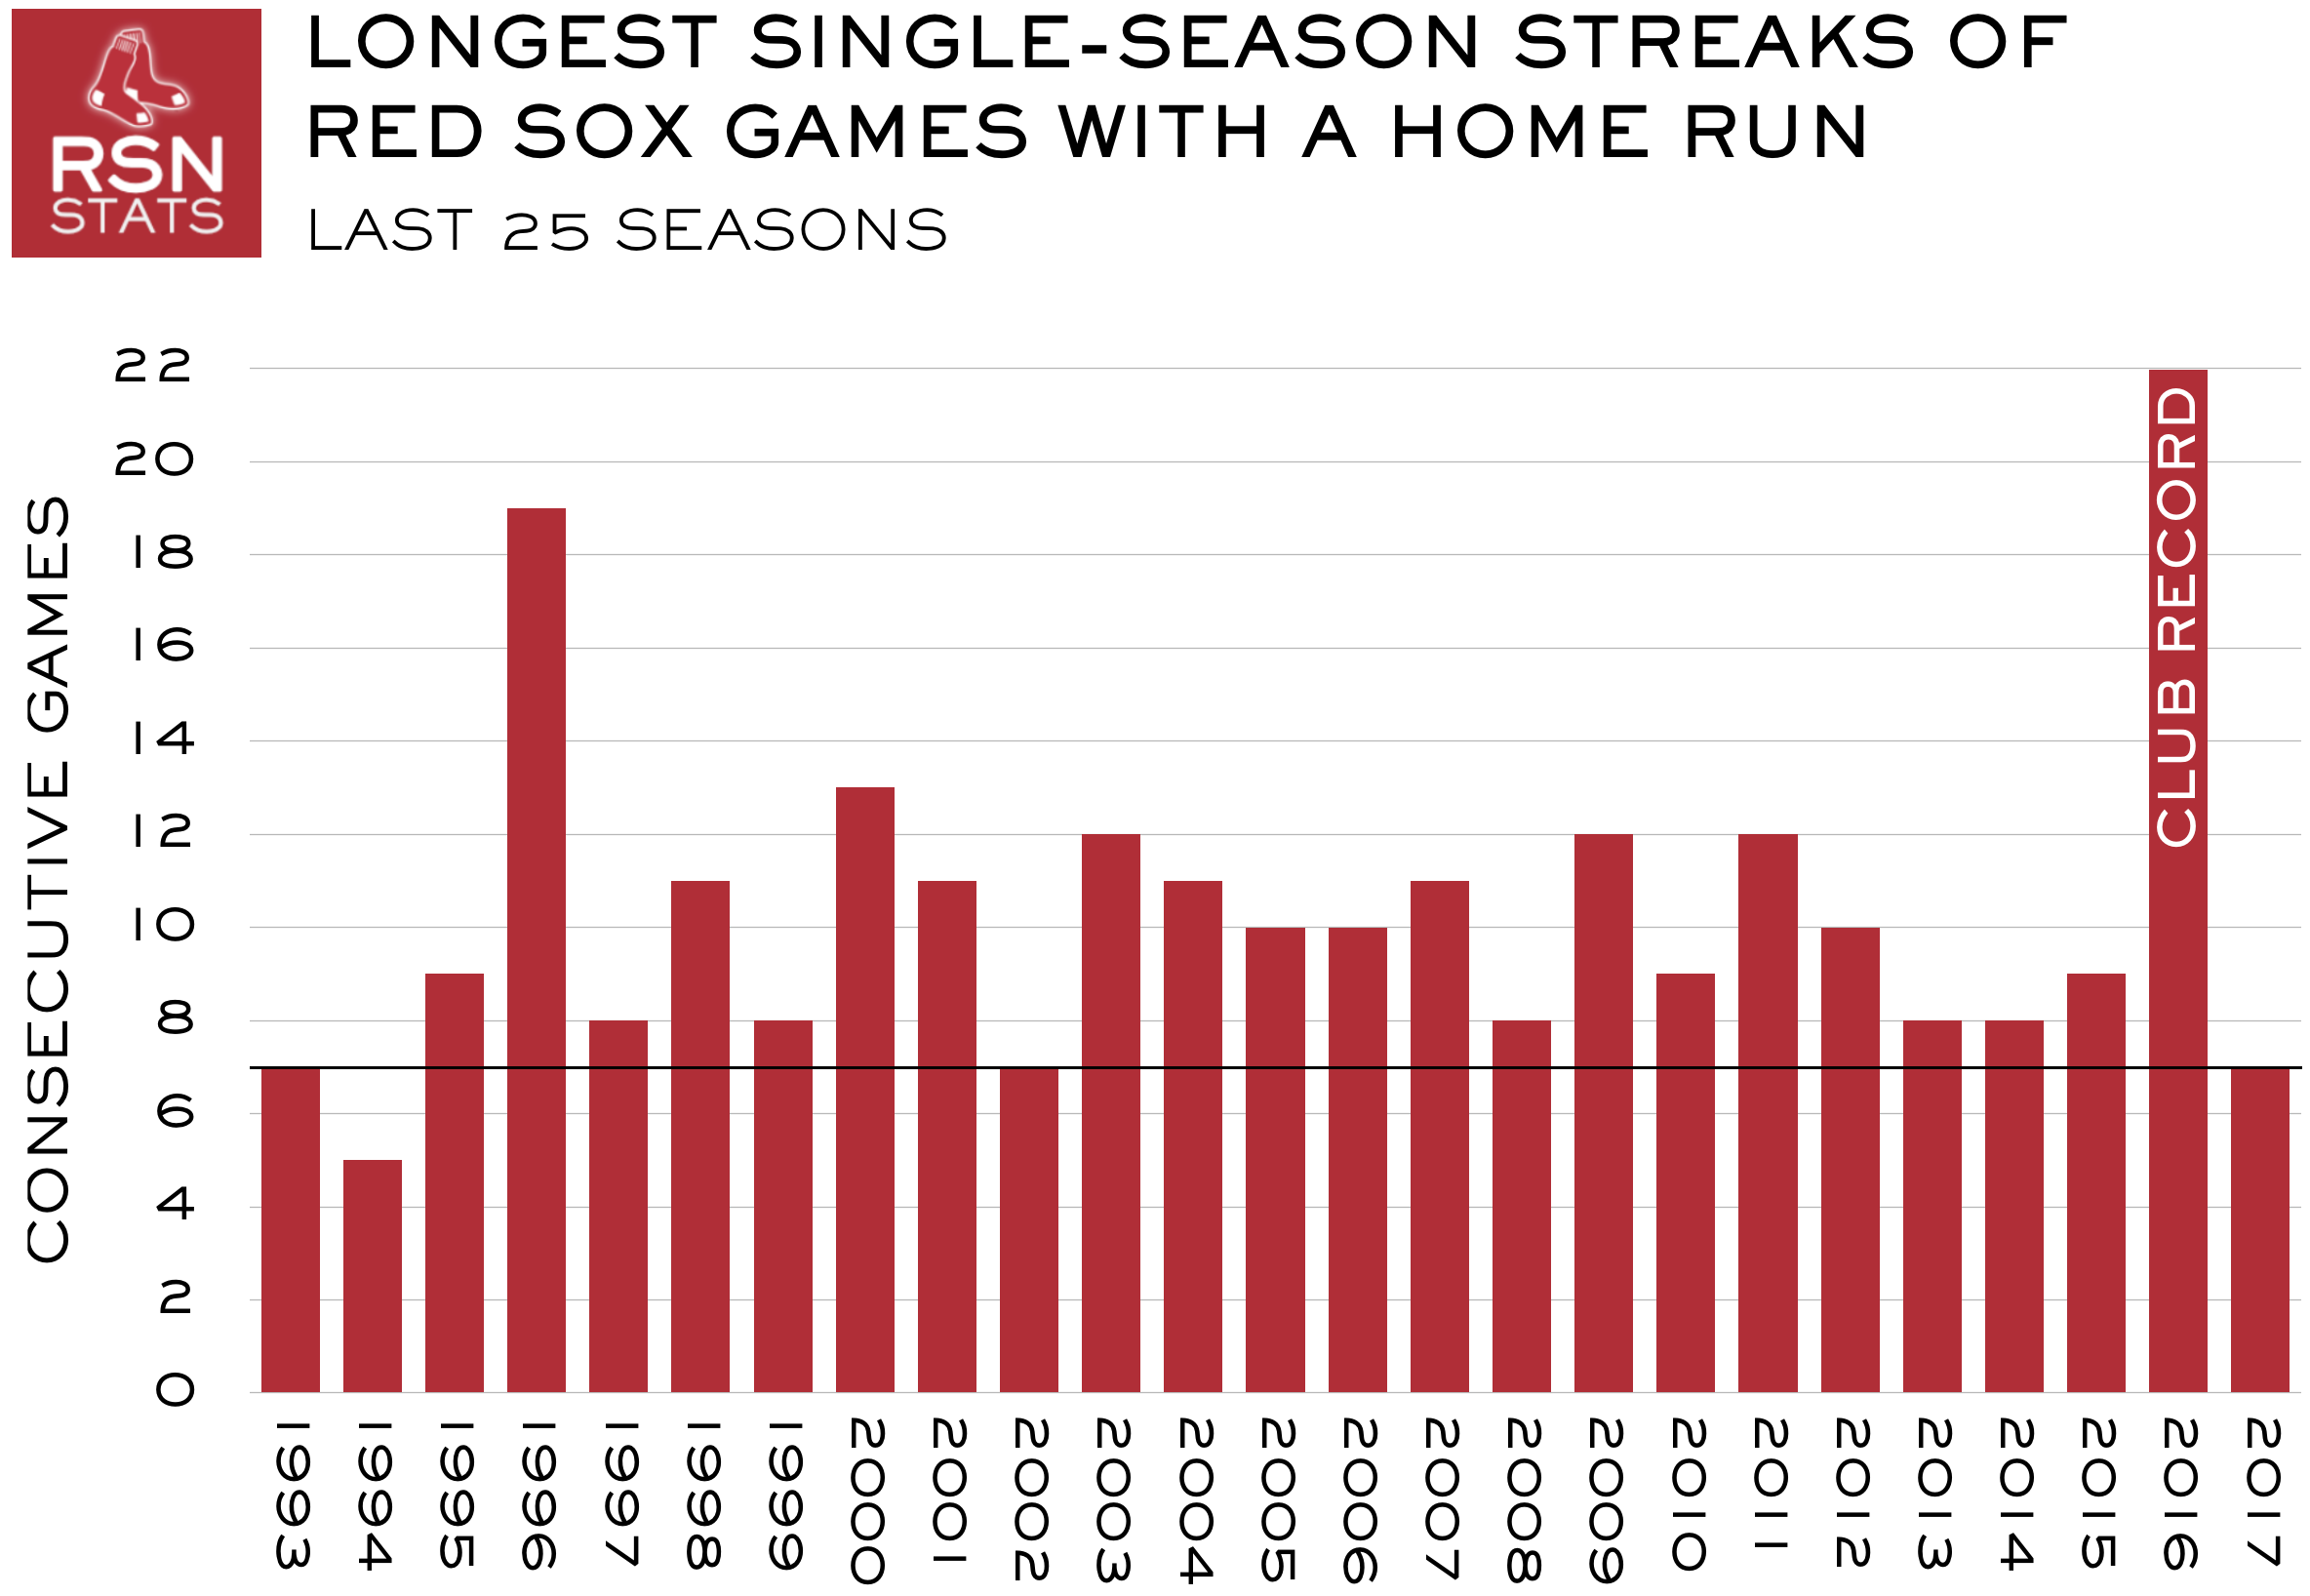 Red Sox Longest HR Streaks, Last 25 Seasons